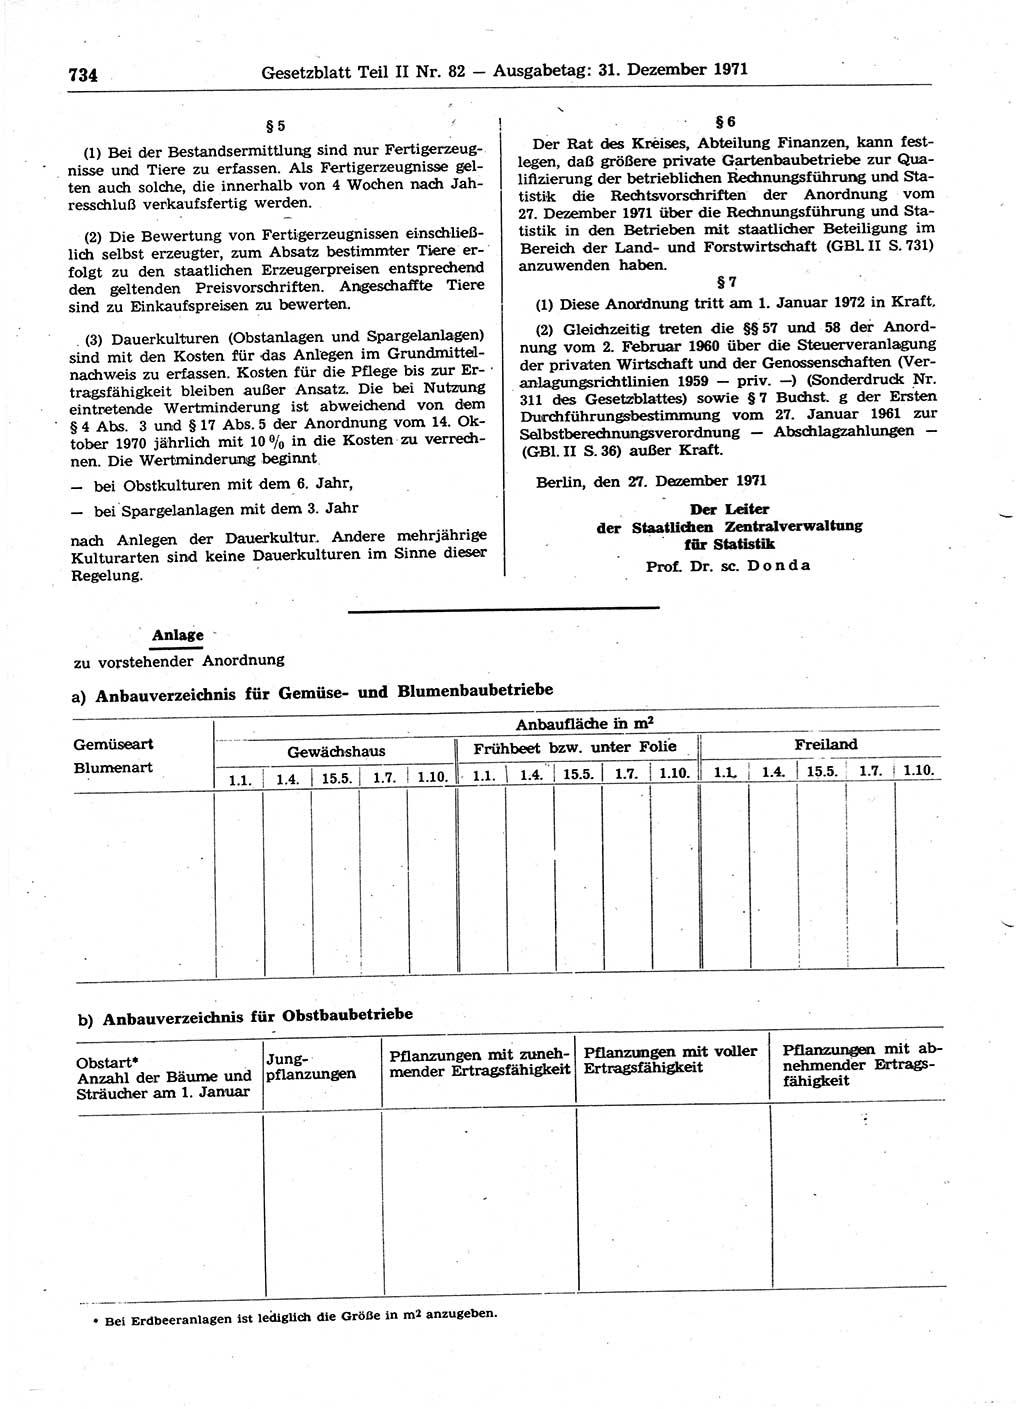 Gesetzblatt (GBl.) der Deutschen Demokratischen Republik (DDR) Teil ⅠⅠ 1971, Seite 734 (GBl. DDR ⅠⅠ 1971, S. 734)